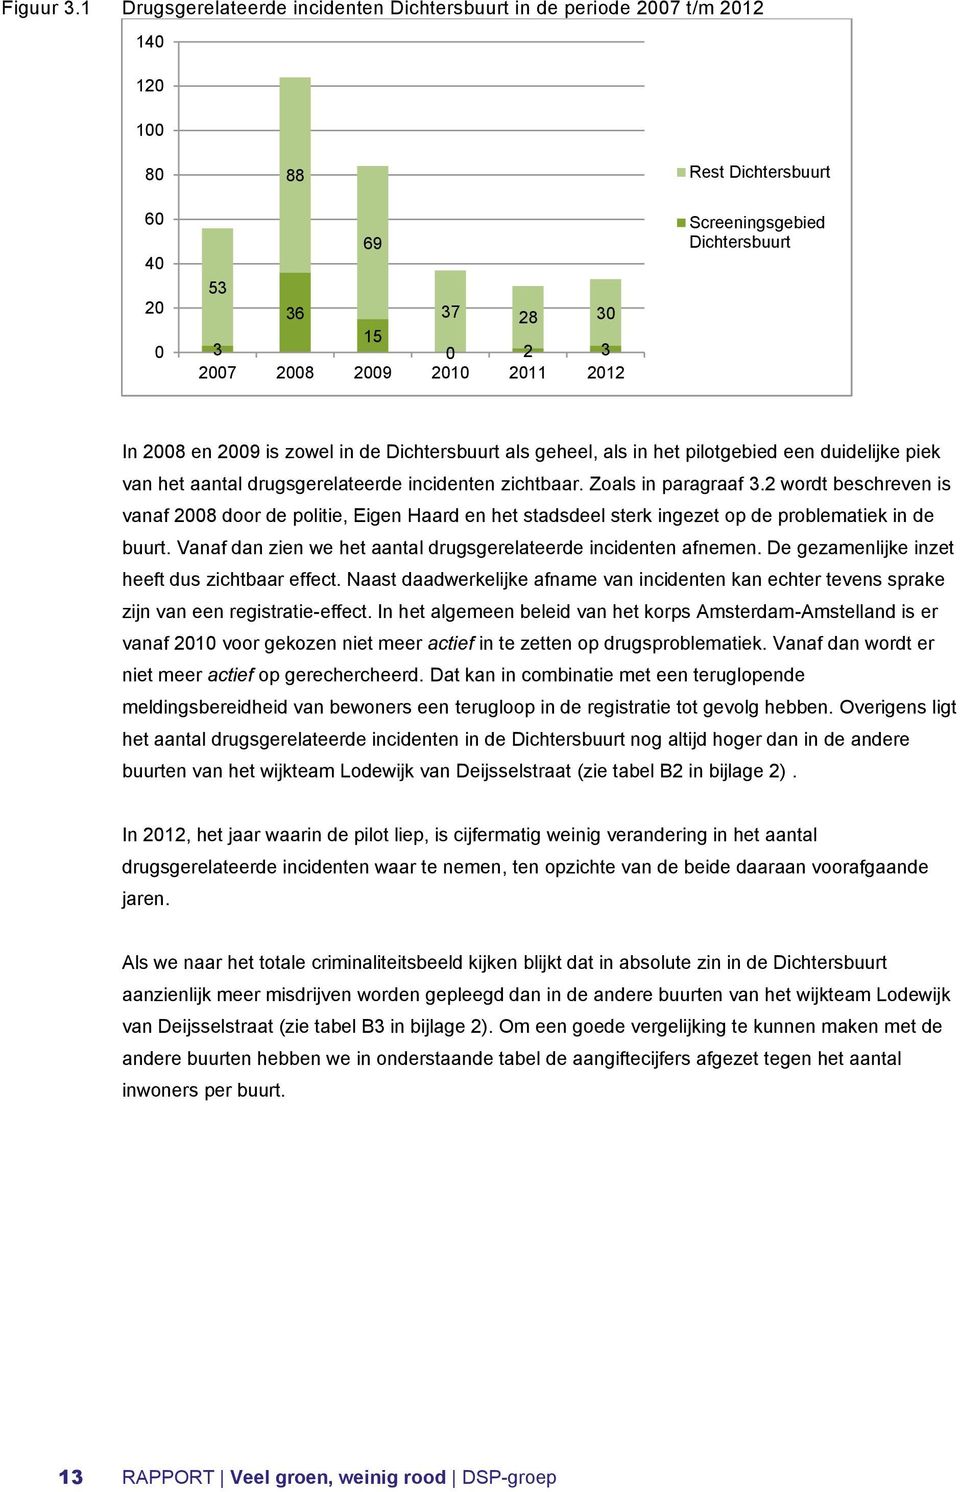 Dichtersbuurt In 2008 en 2009 is zowel in de Dichtersbuurt als geheel, als in het pilotgebied een duidelijke piek van het aantal drugsgerelateerde incidenten zichtbaar. Zoals in paragraaf 3.